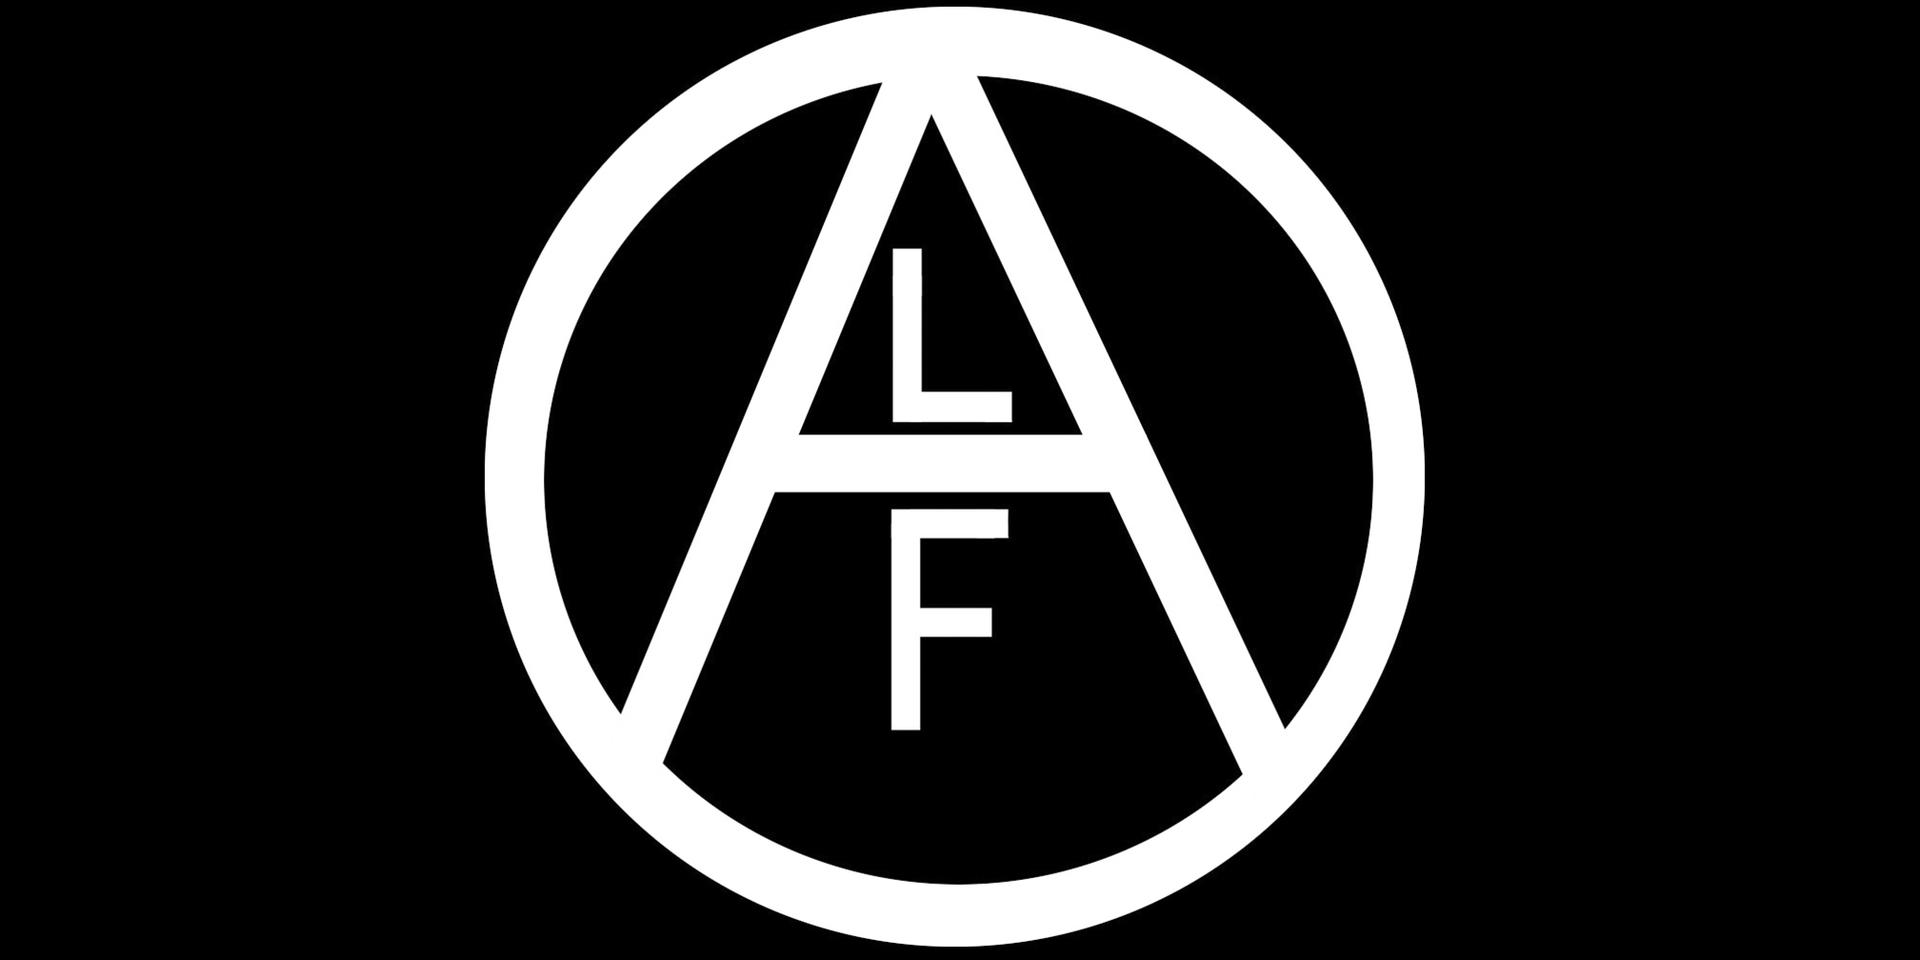 Animal Liberation Front (ALF) är det vanligaste begreppet i militanta djurrättskretsar. ALF är ingen organisation, utan används som begrepp för aktivister som förespråkar och begår brott i sin kamp mot djurägare och företagare.